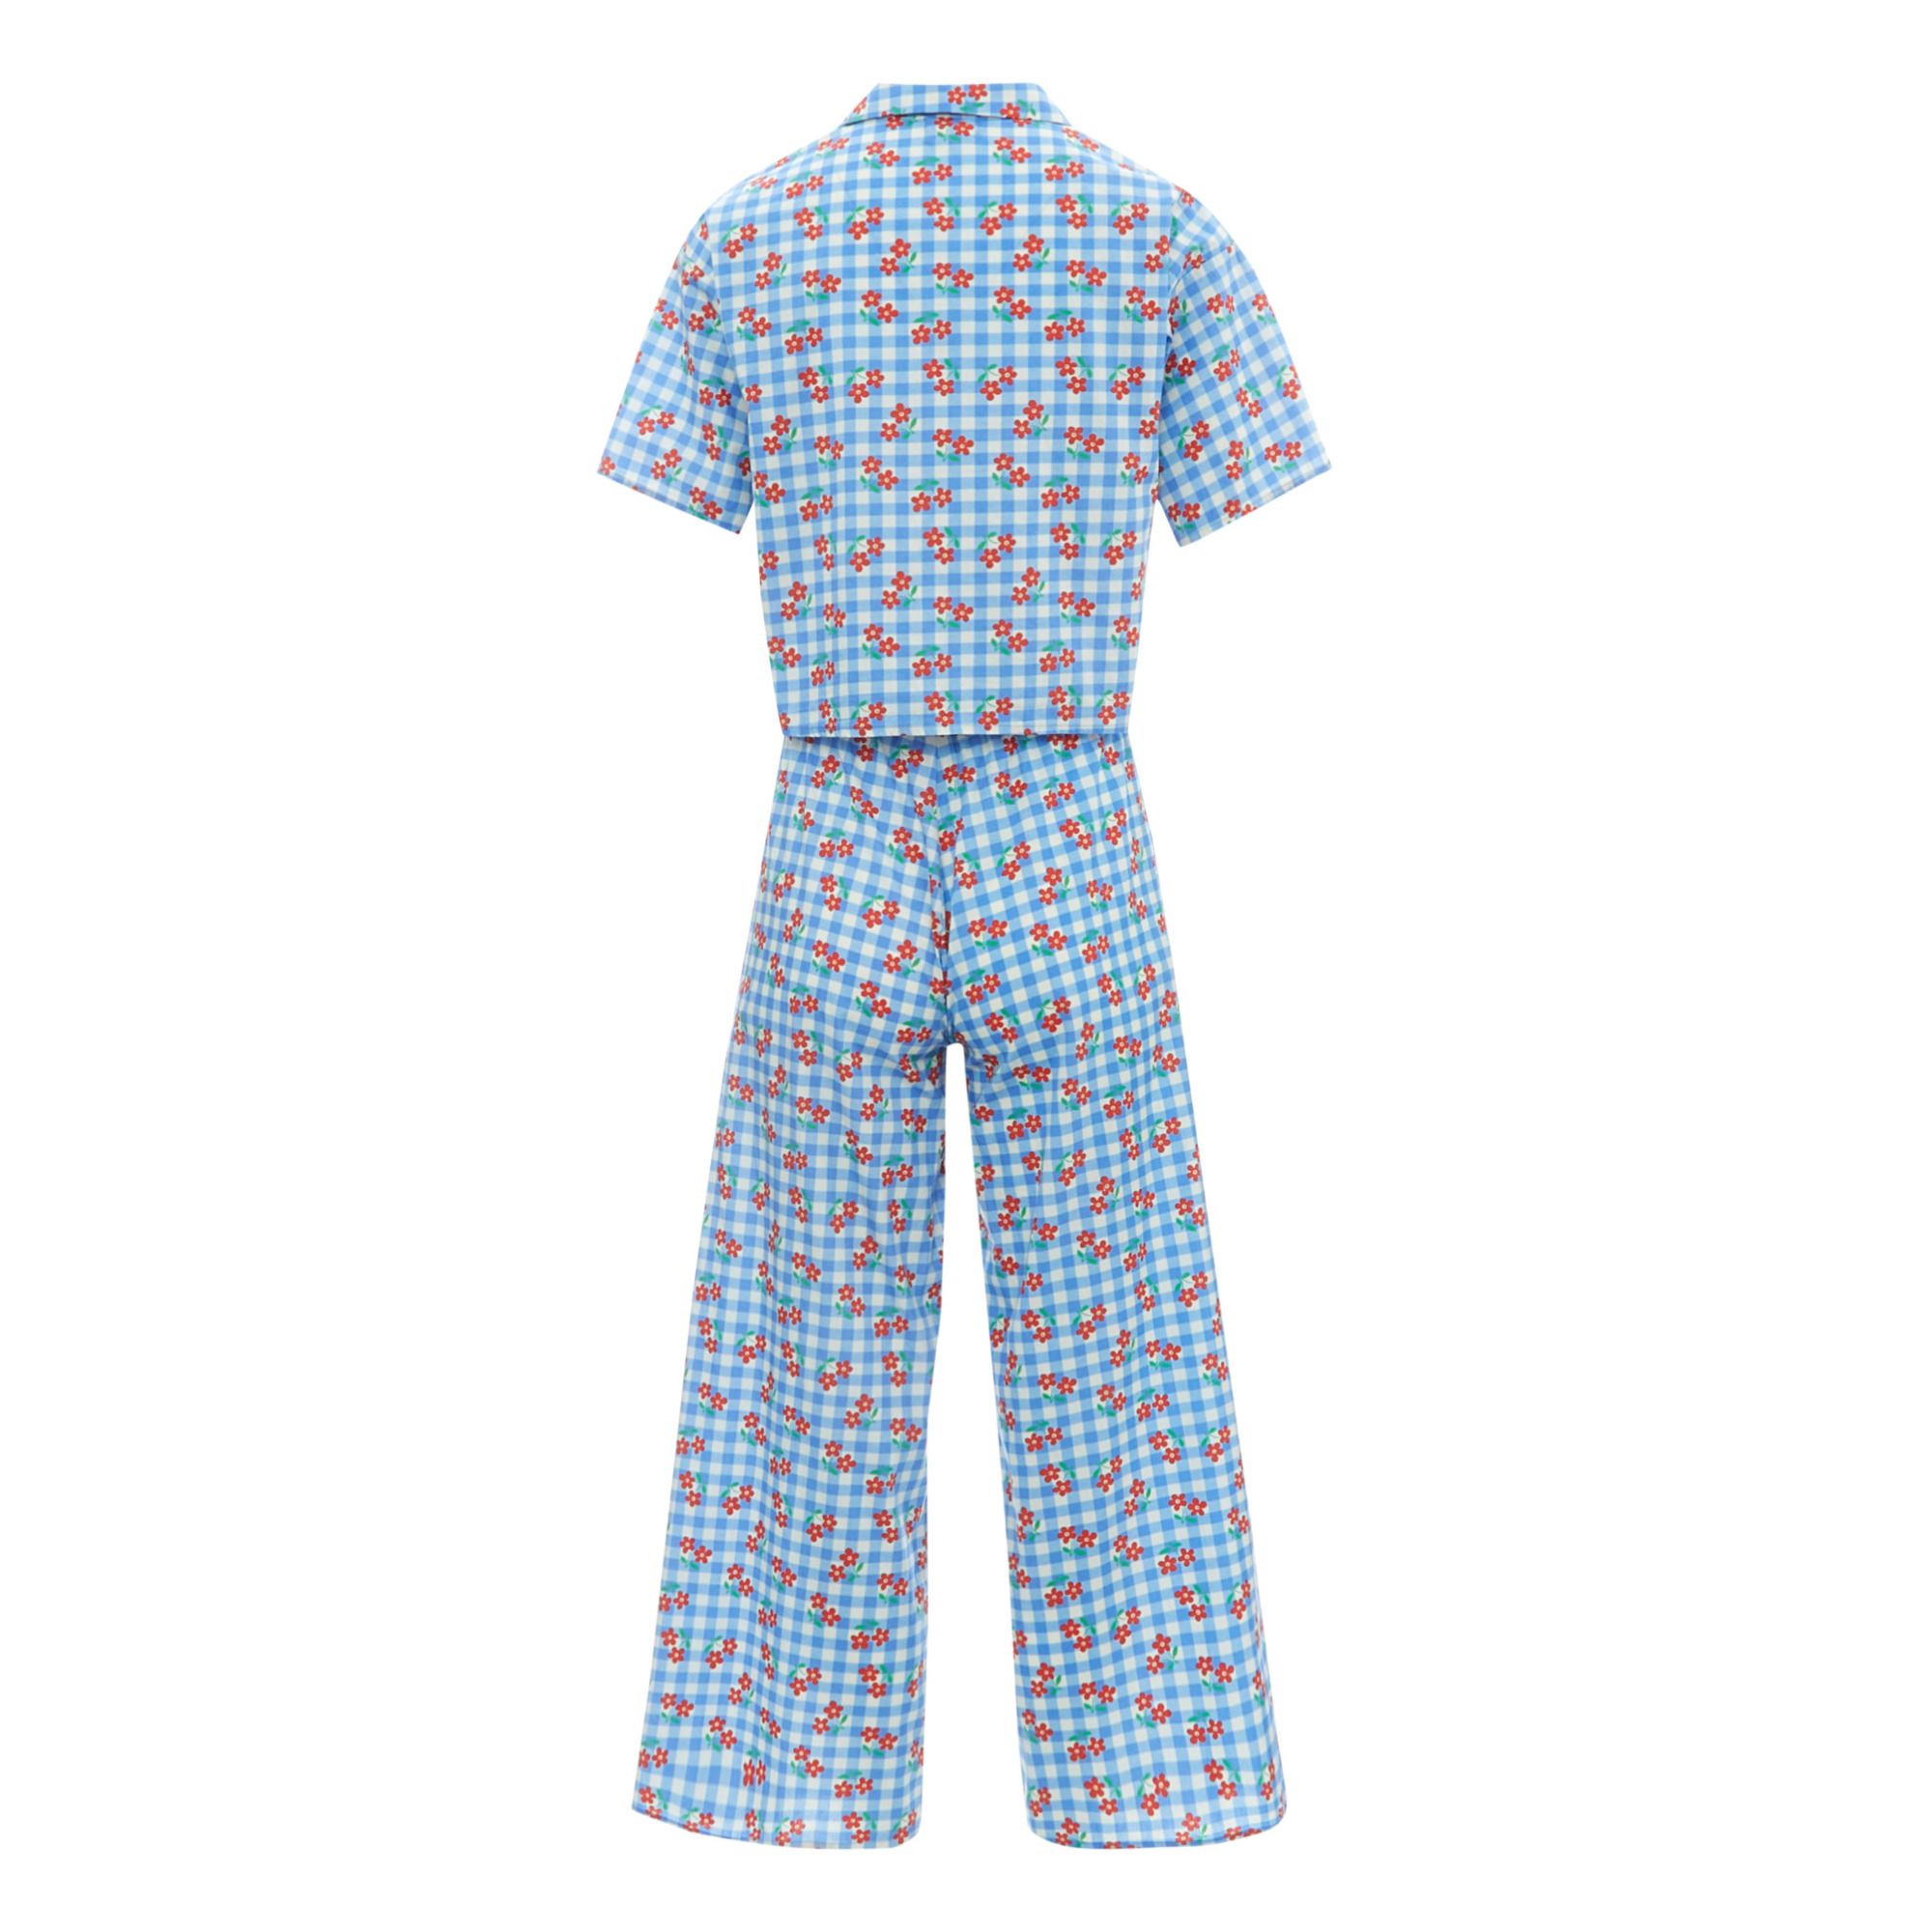 Exclusivité Hello Simone x Smallable Pyjama Party – Pyjama Chemise + Pantalon Ginger - Collection Femme - Bleu- Image produit n°1